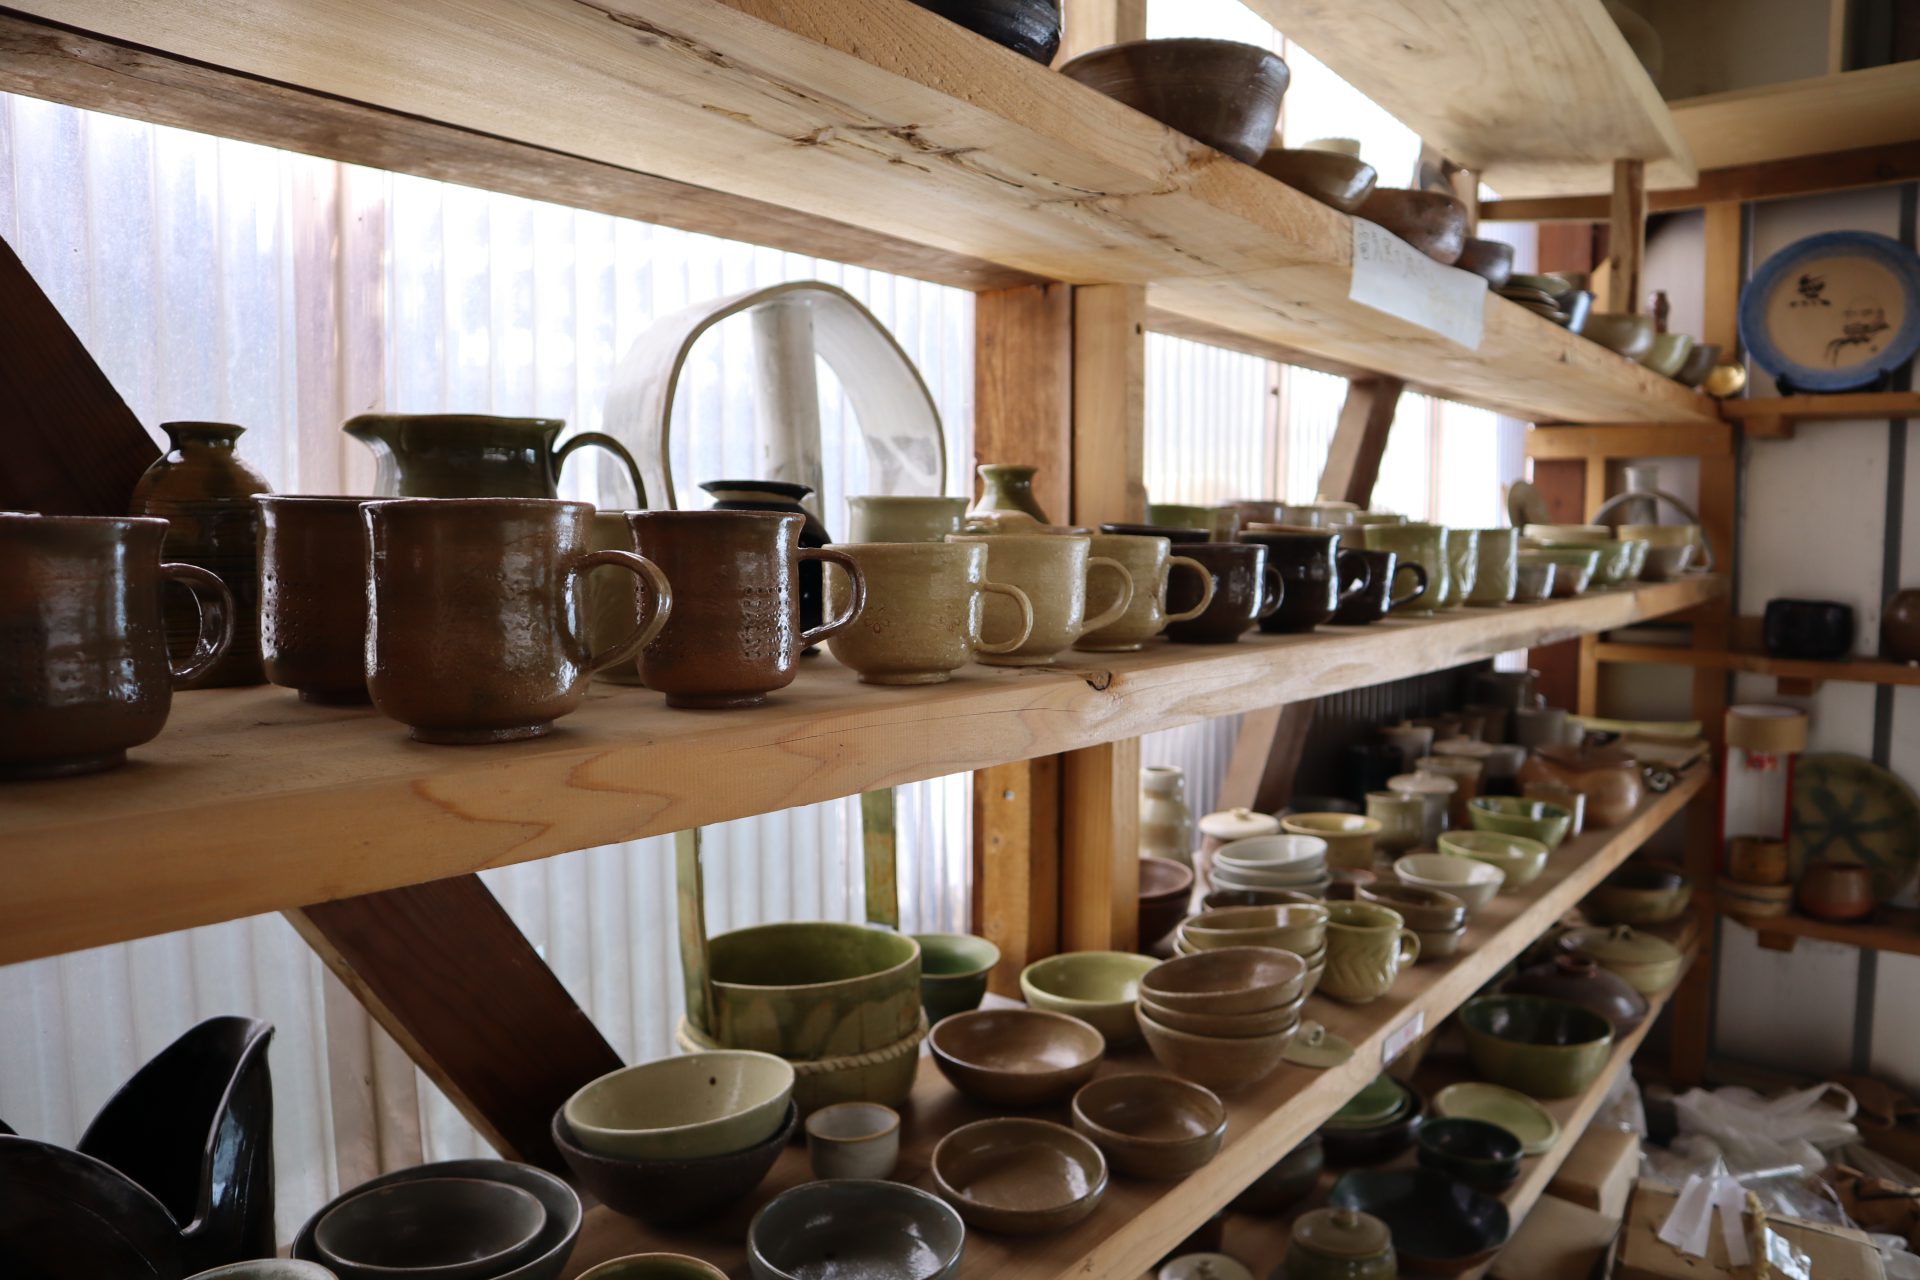  
北上市立花地区に建つ、穴窯「香花窯」。
「電気窯」と「穴窯」という2種の焼成方法で陶磁器を作成することができ、「備前焼」や「信楽焼」等、様々な陶器が作成可能です。
工房へ入ると、壁一面にたくさんの陶芸品が。様々な形・色・種類の陶磁器を見学できます。
陶芸体験のほか、時期により窯焚き体験、まき割り体験も可能です。